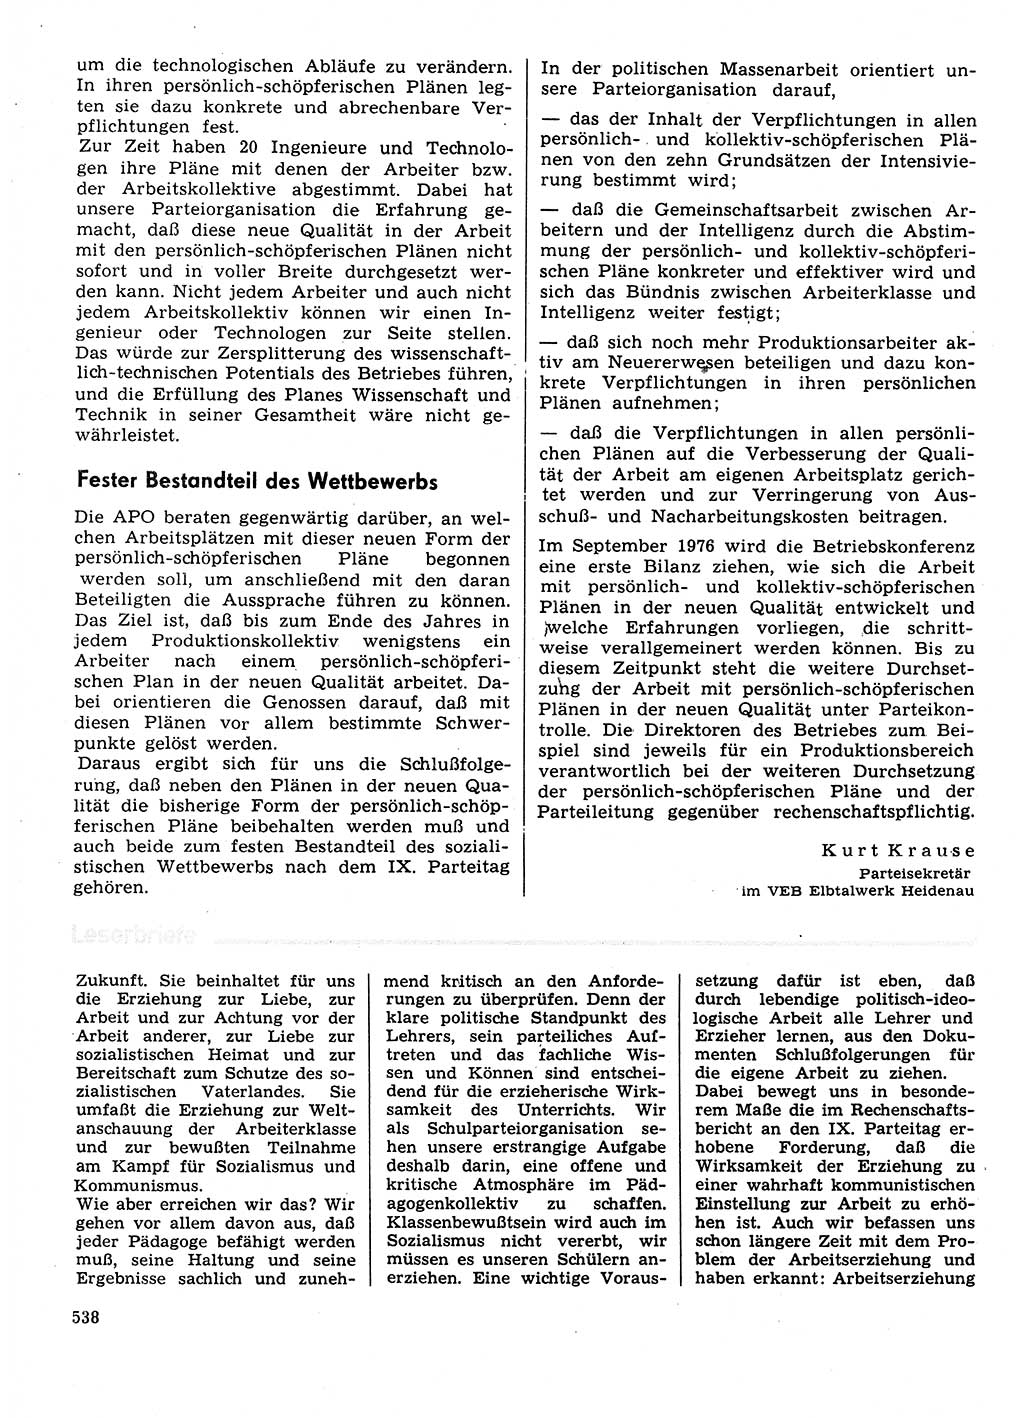 Neuer Weg (NW), Organ des Zentralkomitees (ZK) der SED (Sozialistische Einheitspartei Deutschlands) für Fragen des Parteilebens, 31. Jahrgang [Deutsche Demokratische Republik (DDR)] 1976, Seite 538 (NW ZK SED DDR 1976, S. 538)